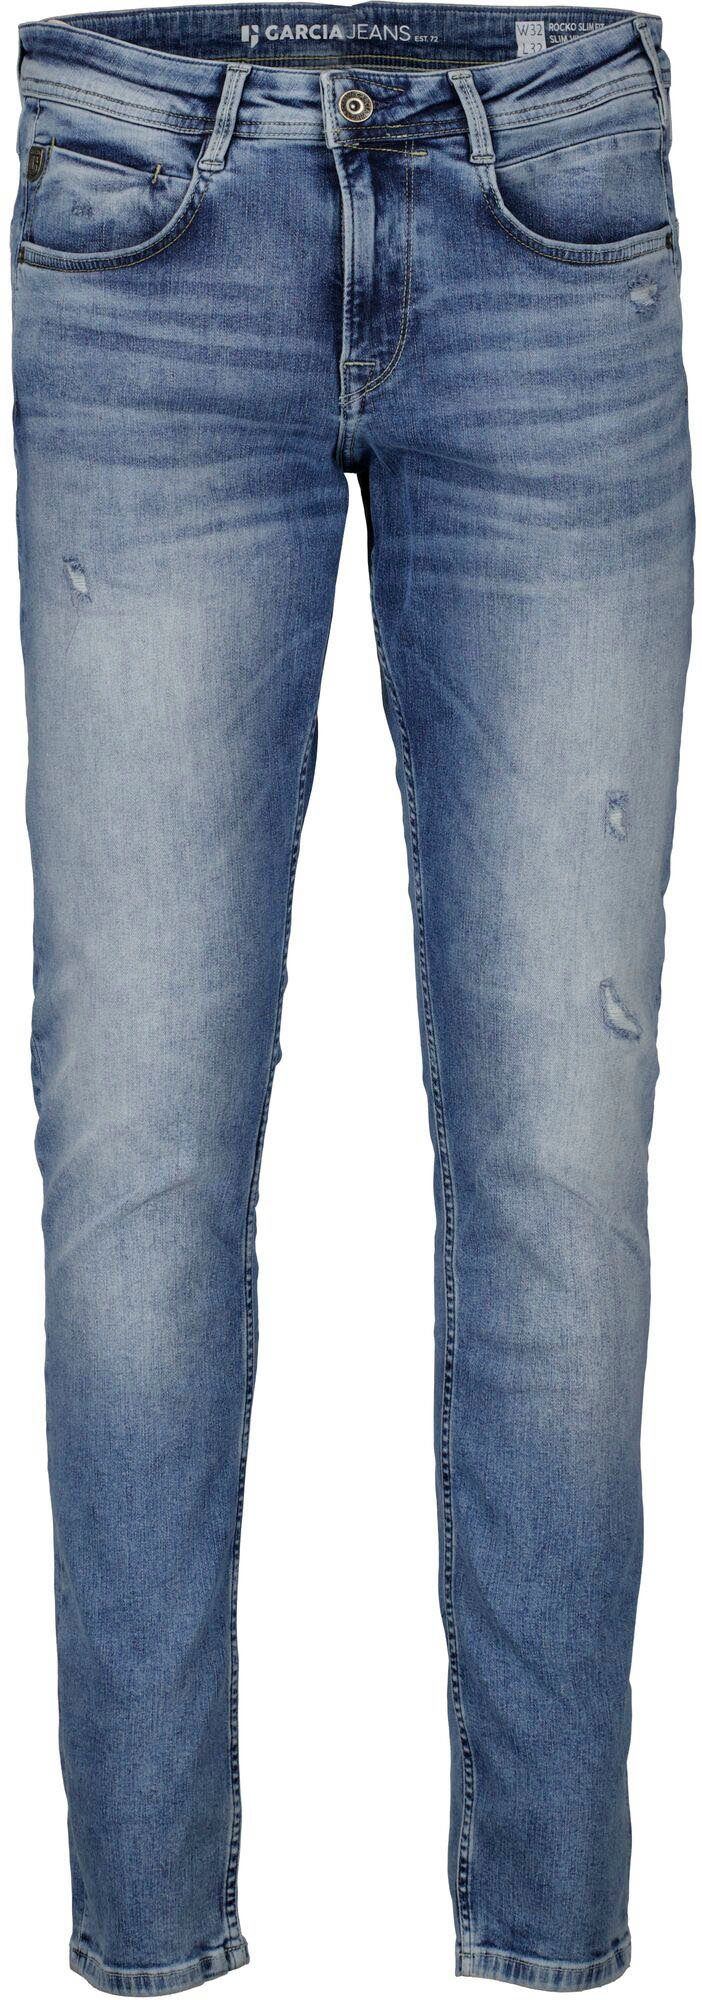 Garcia 5-Pocket-Jeans Rocko vintage Waschungen in verschiedenen used